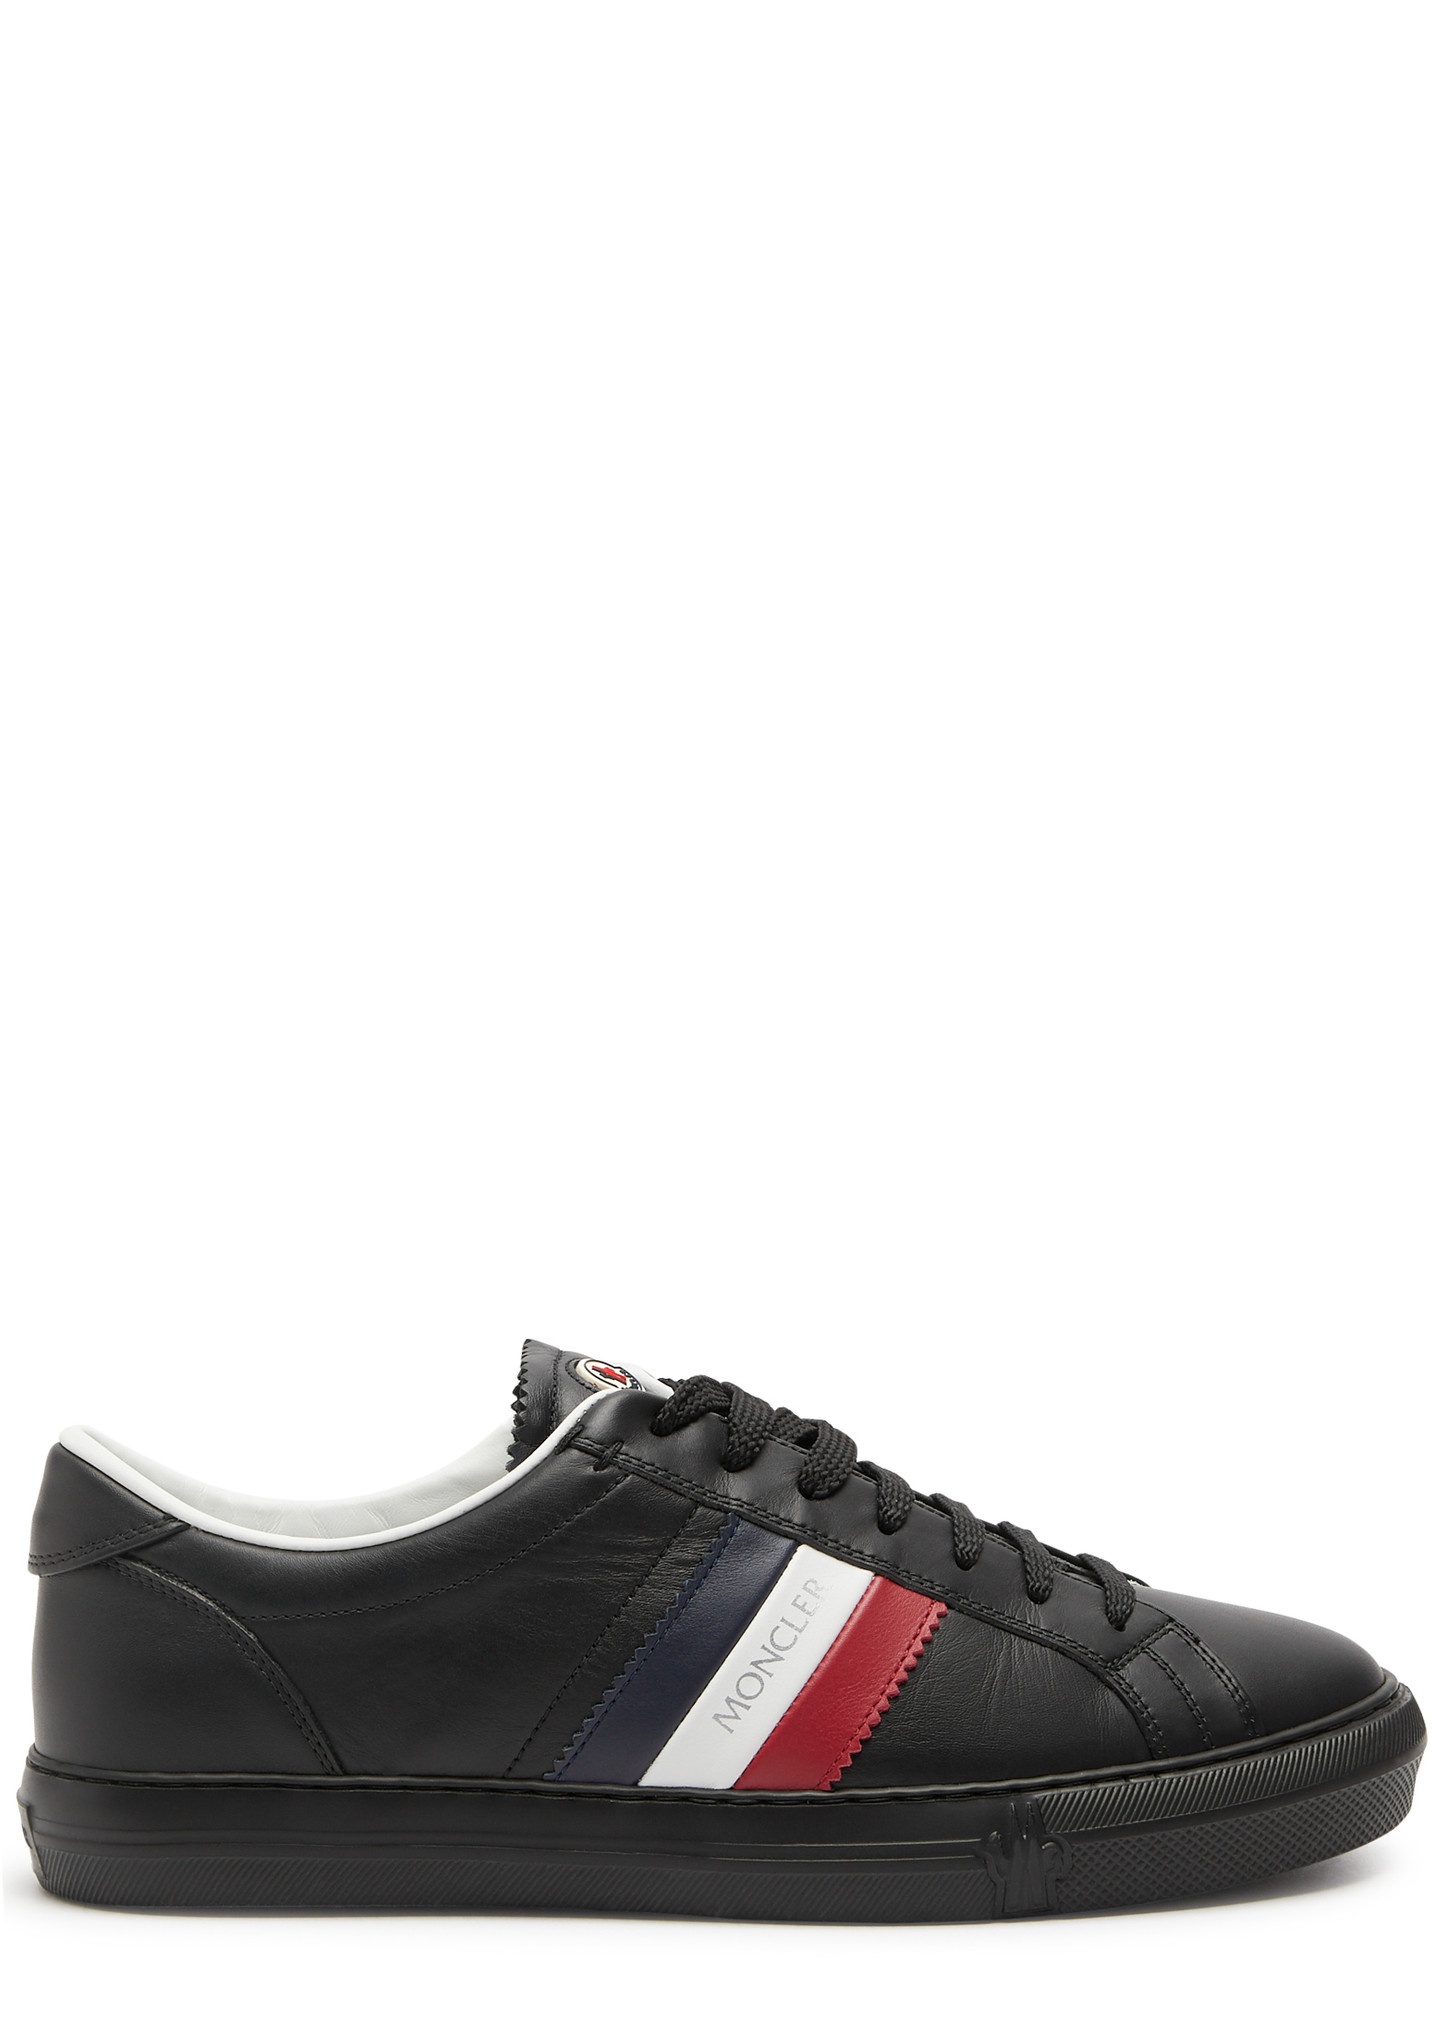 New Monaco leather sneakers - 1